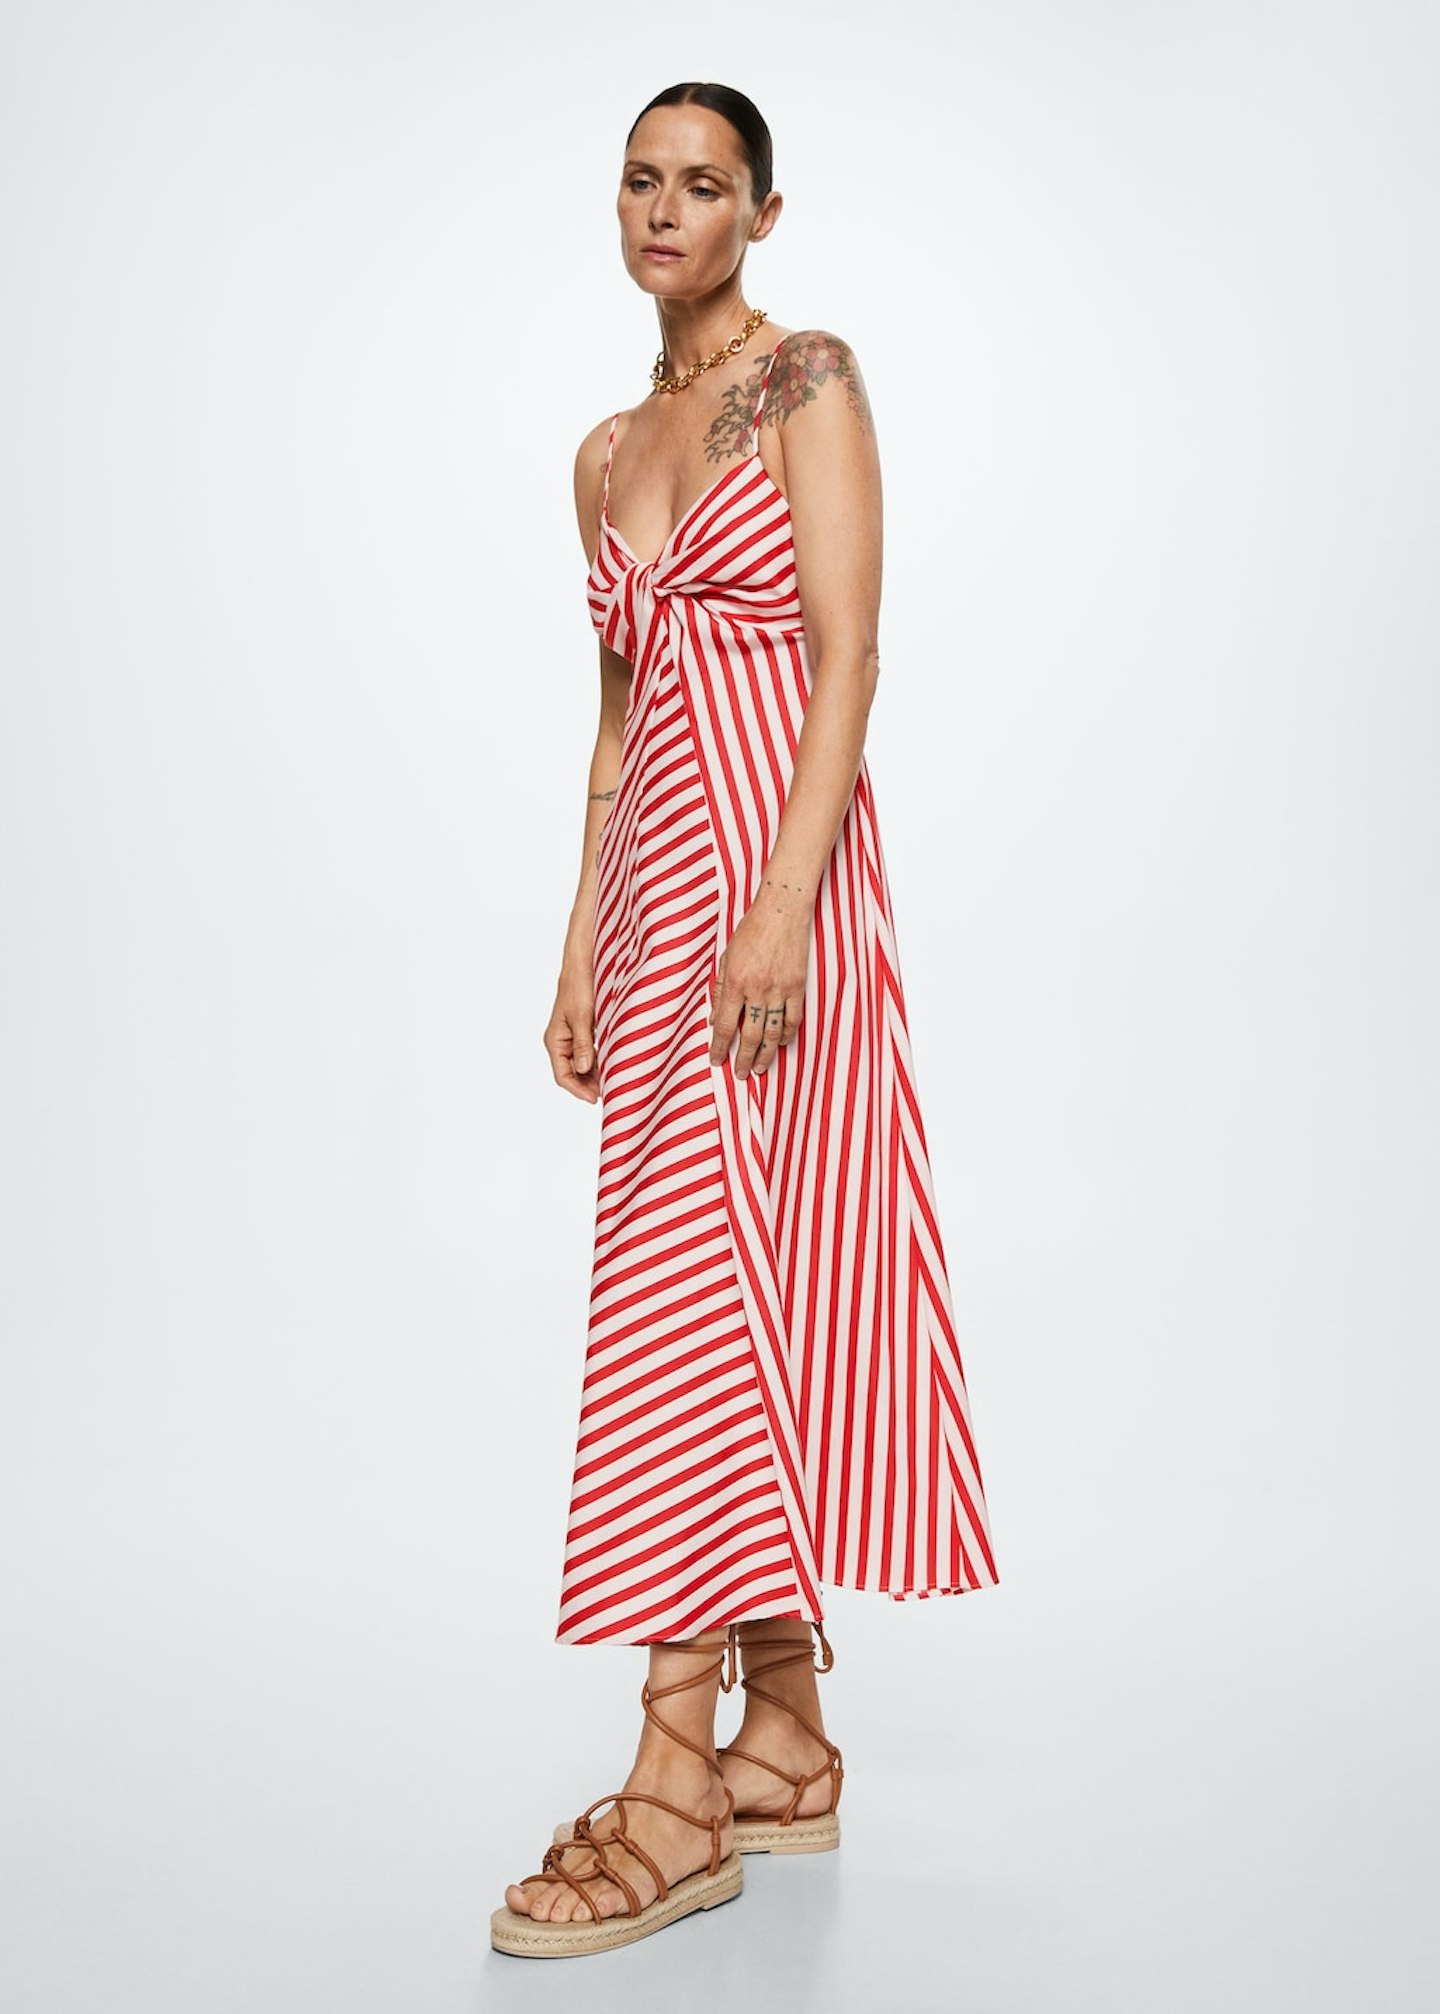 jubilee weekend Mango, Striped Cotton Blend Dress, £59.99